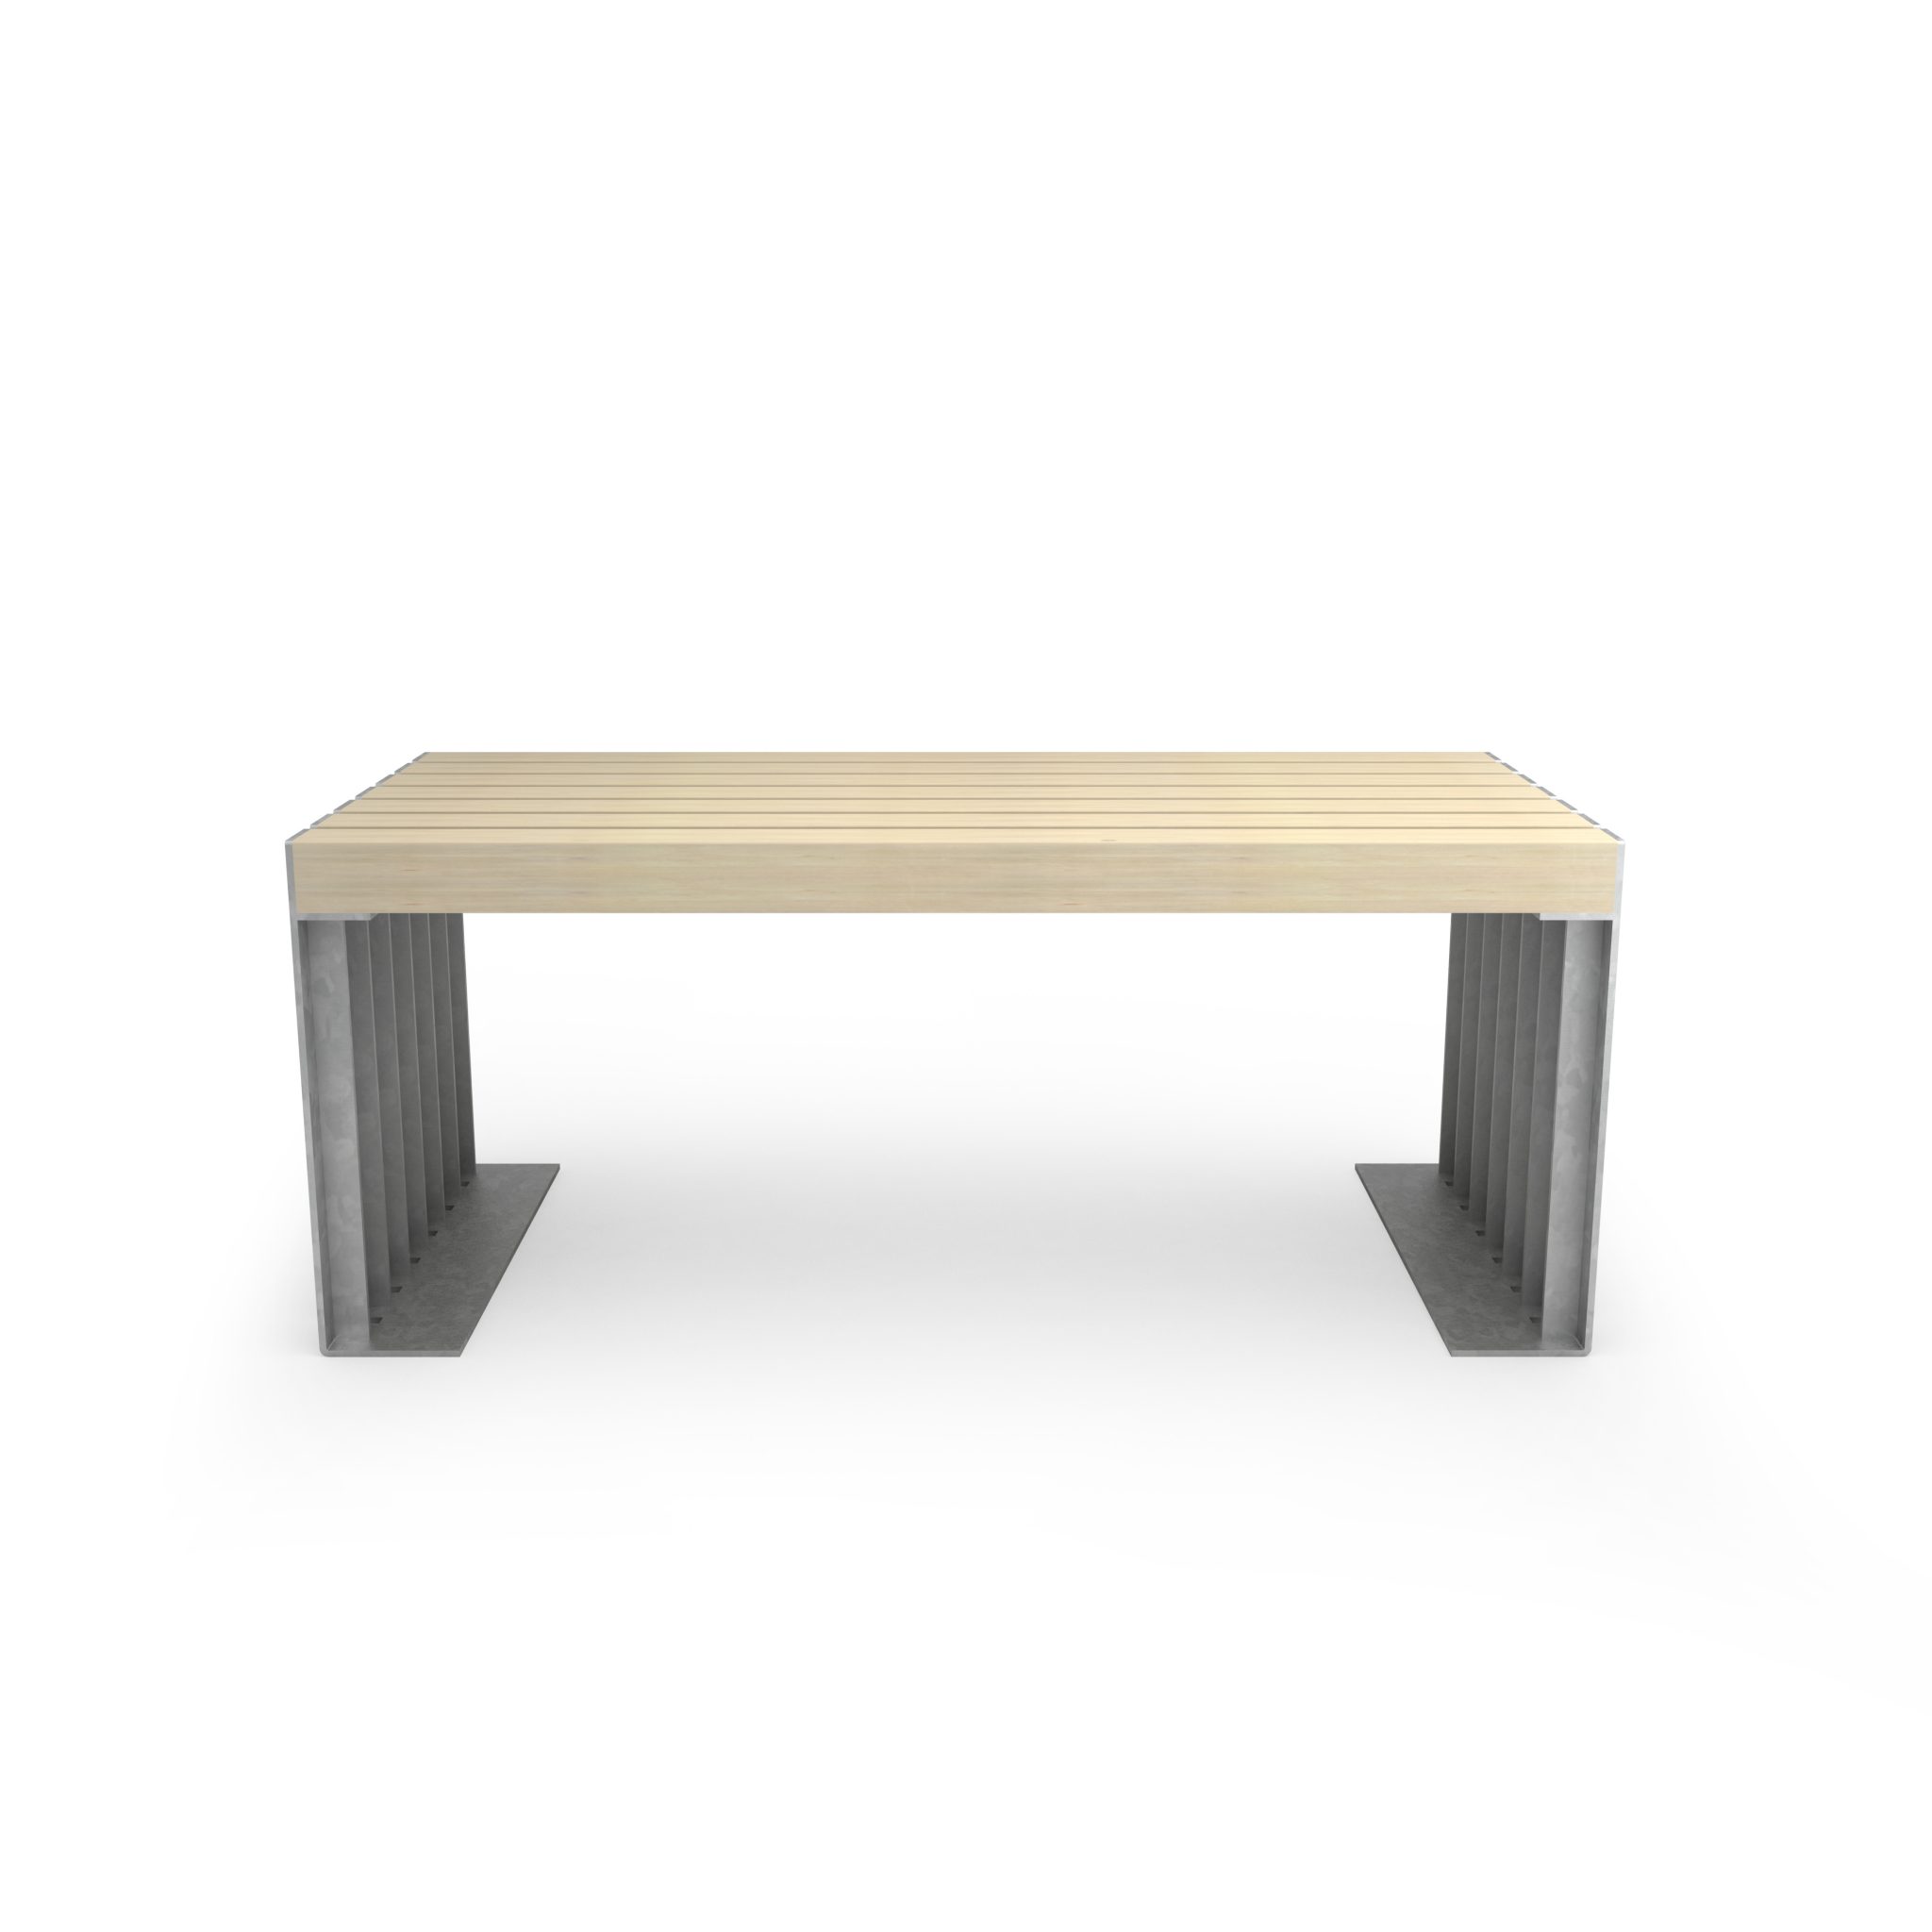 tavolo con materiali riciclati - arredo urbano ecosostenibile - LAB23